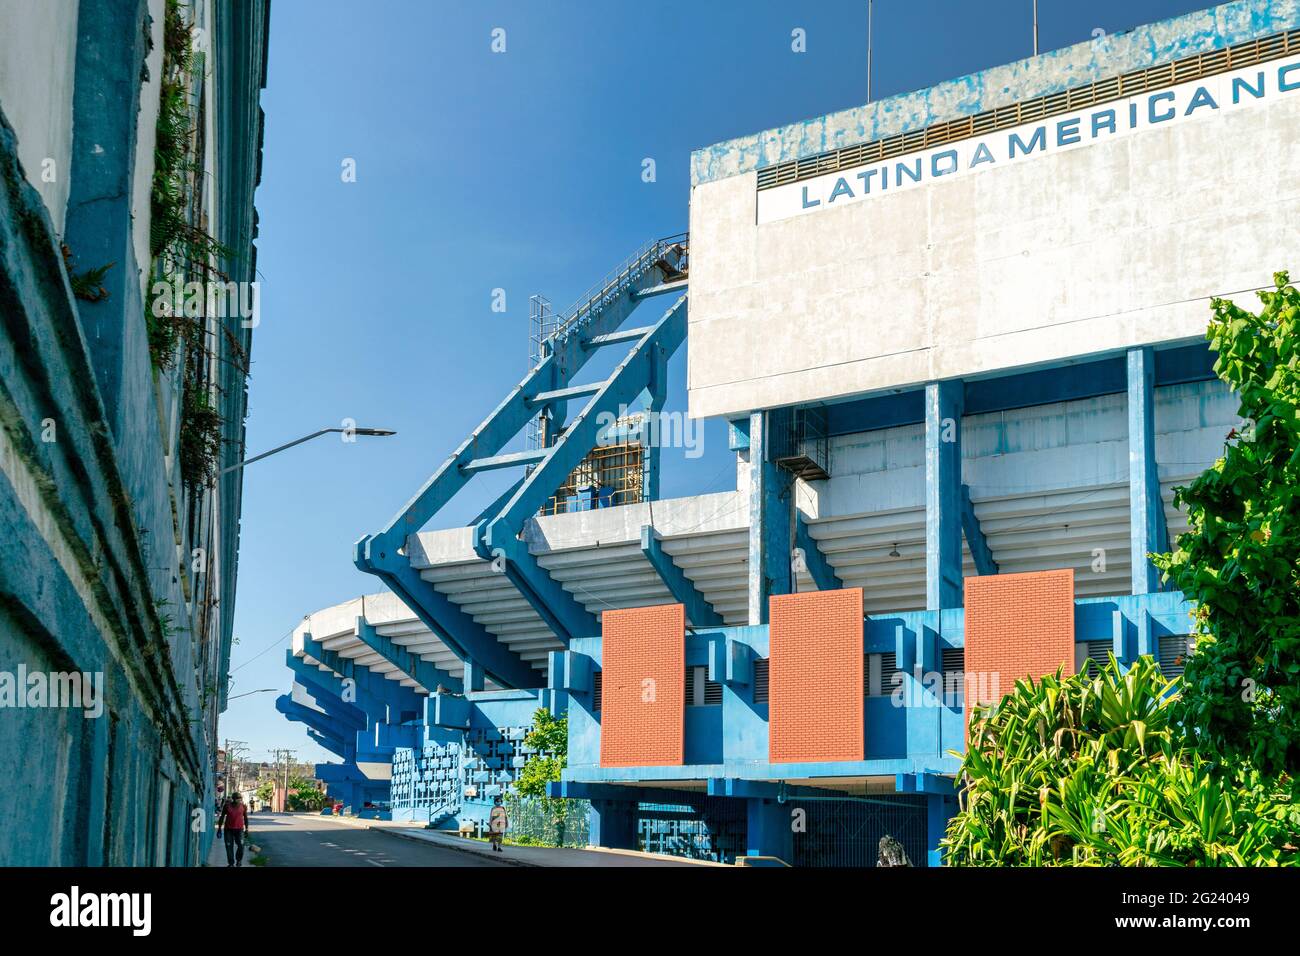 Stadium Latino Americano, Havana, Cuba, June 2021 Stock Photo